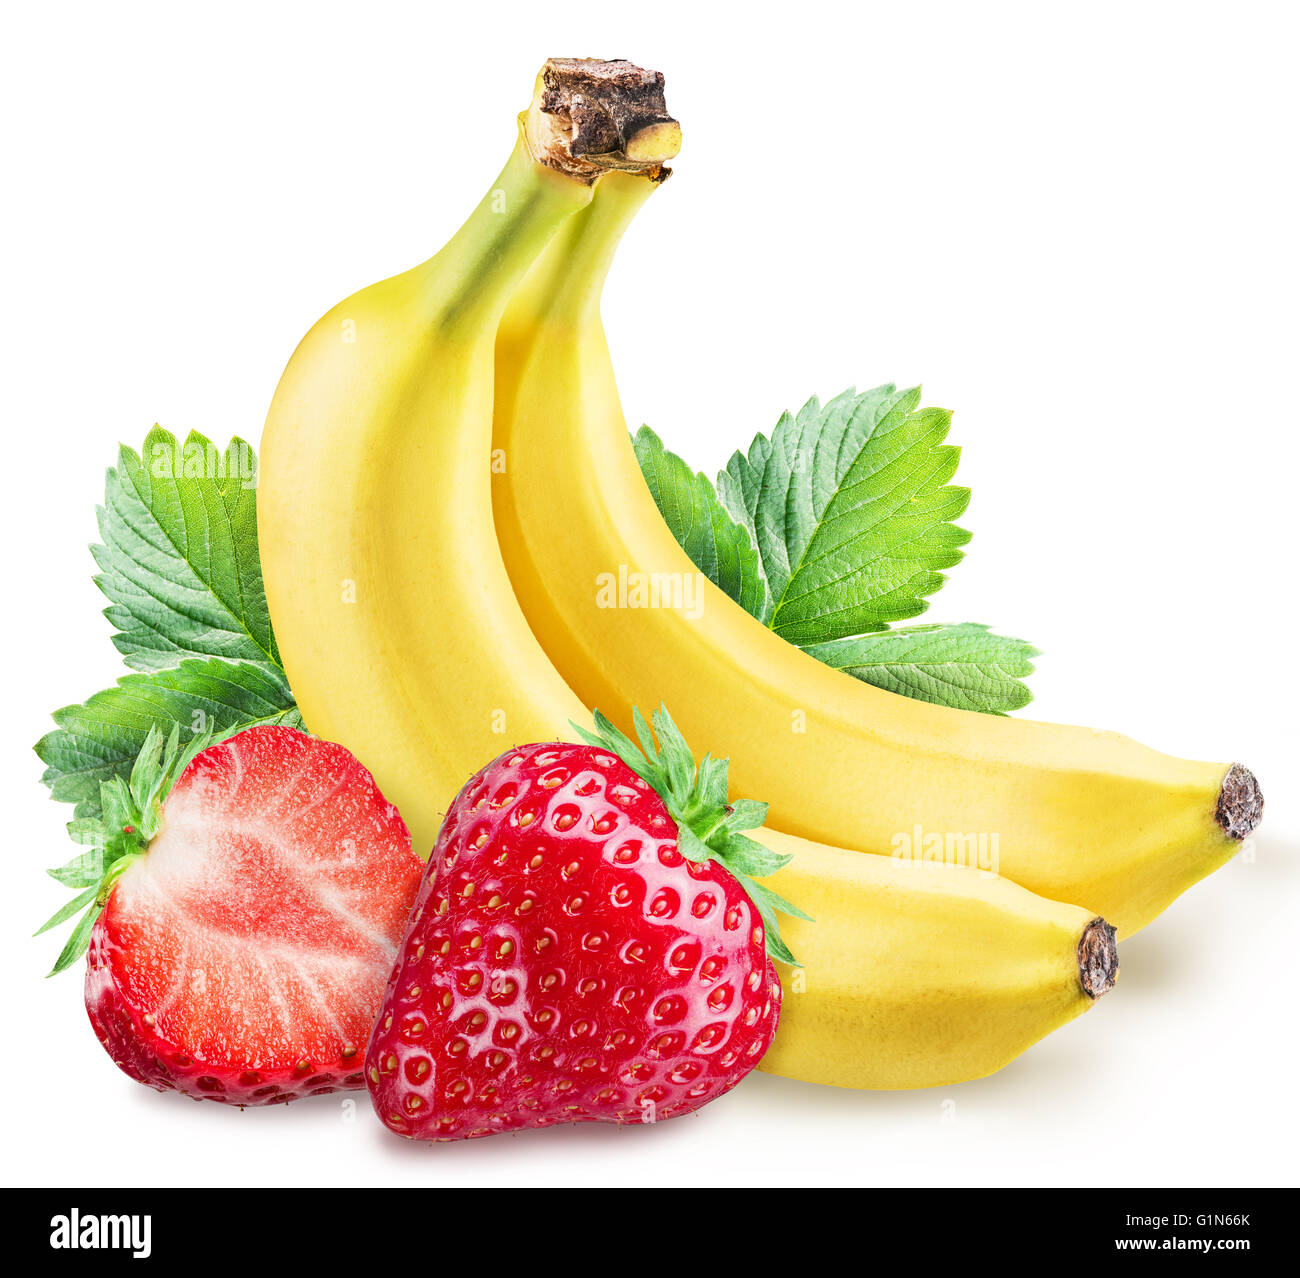 Erdbeeren und Bananen. Datei enthält Beschneidungspfade. Stockfoto